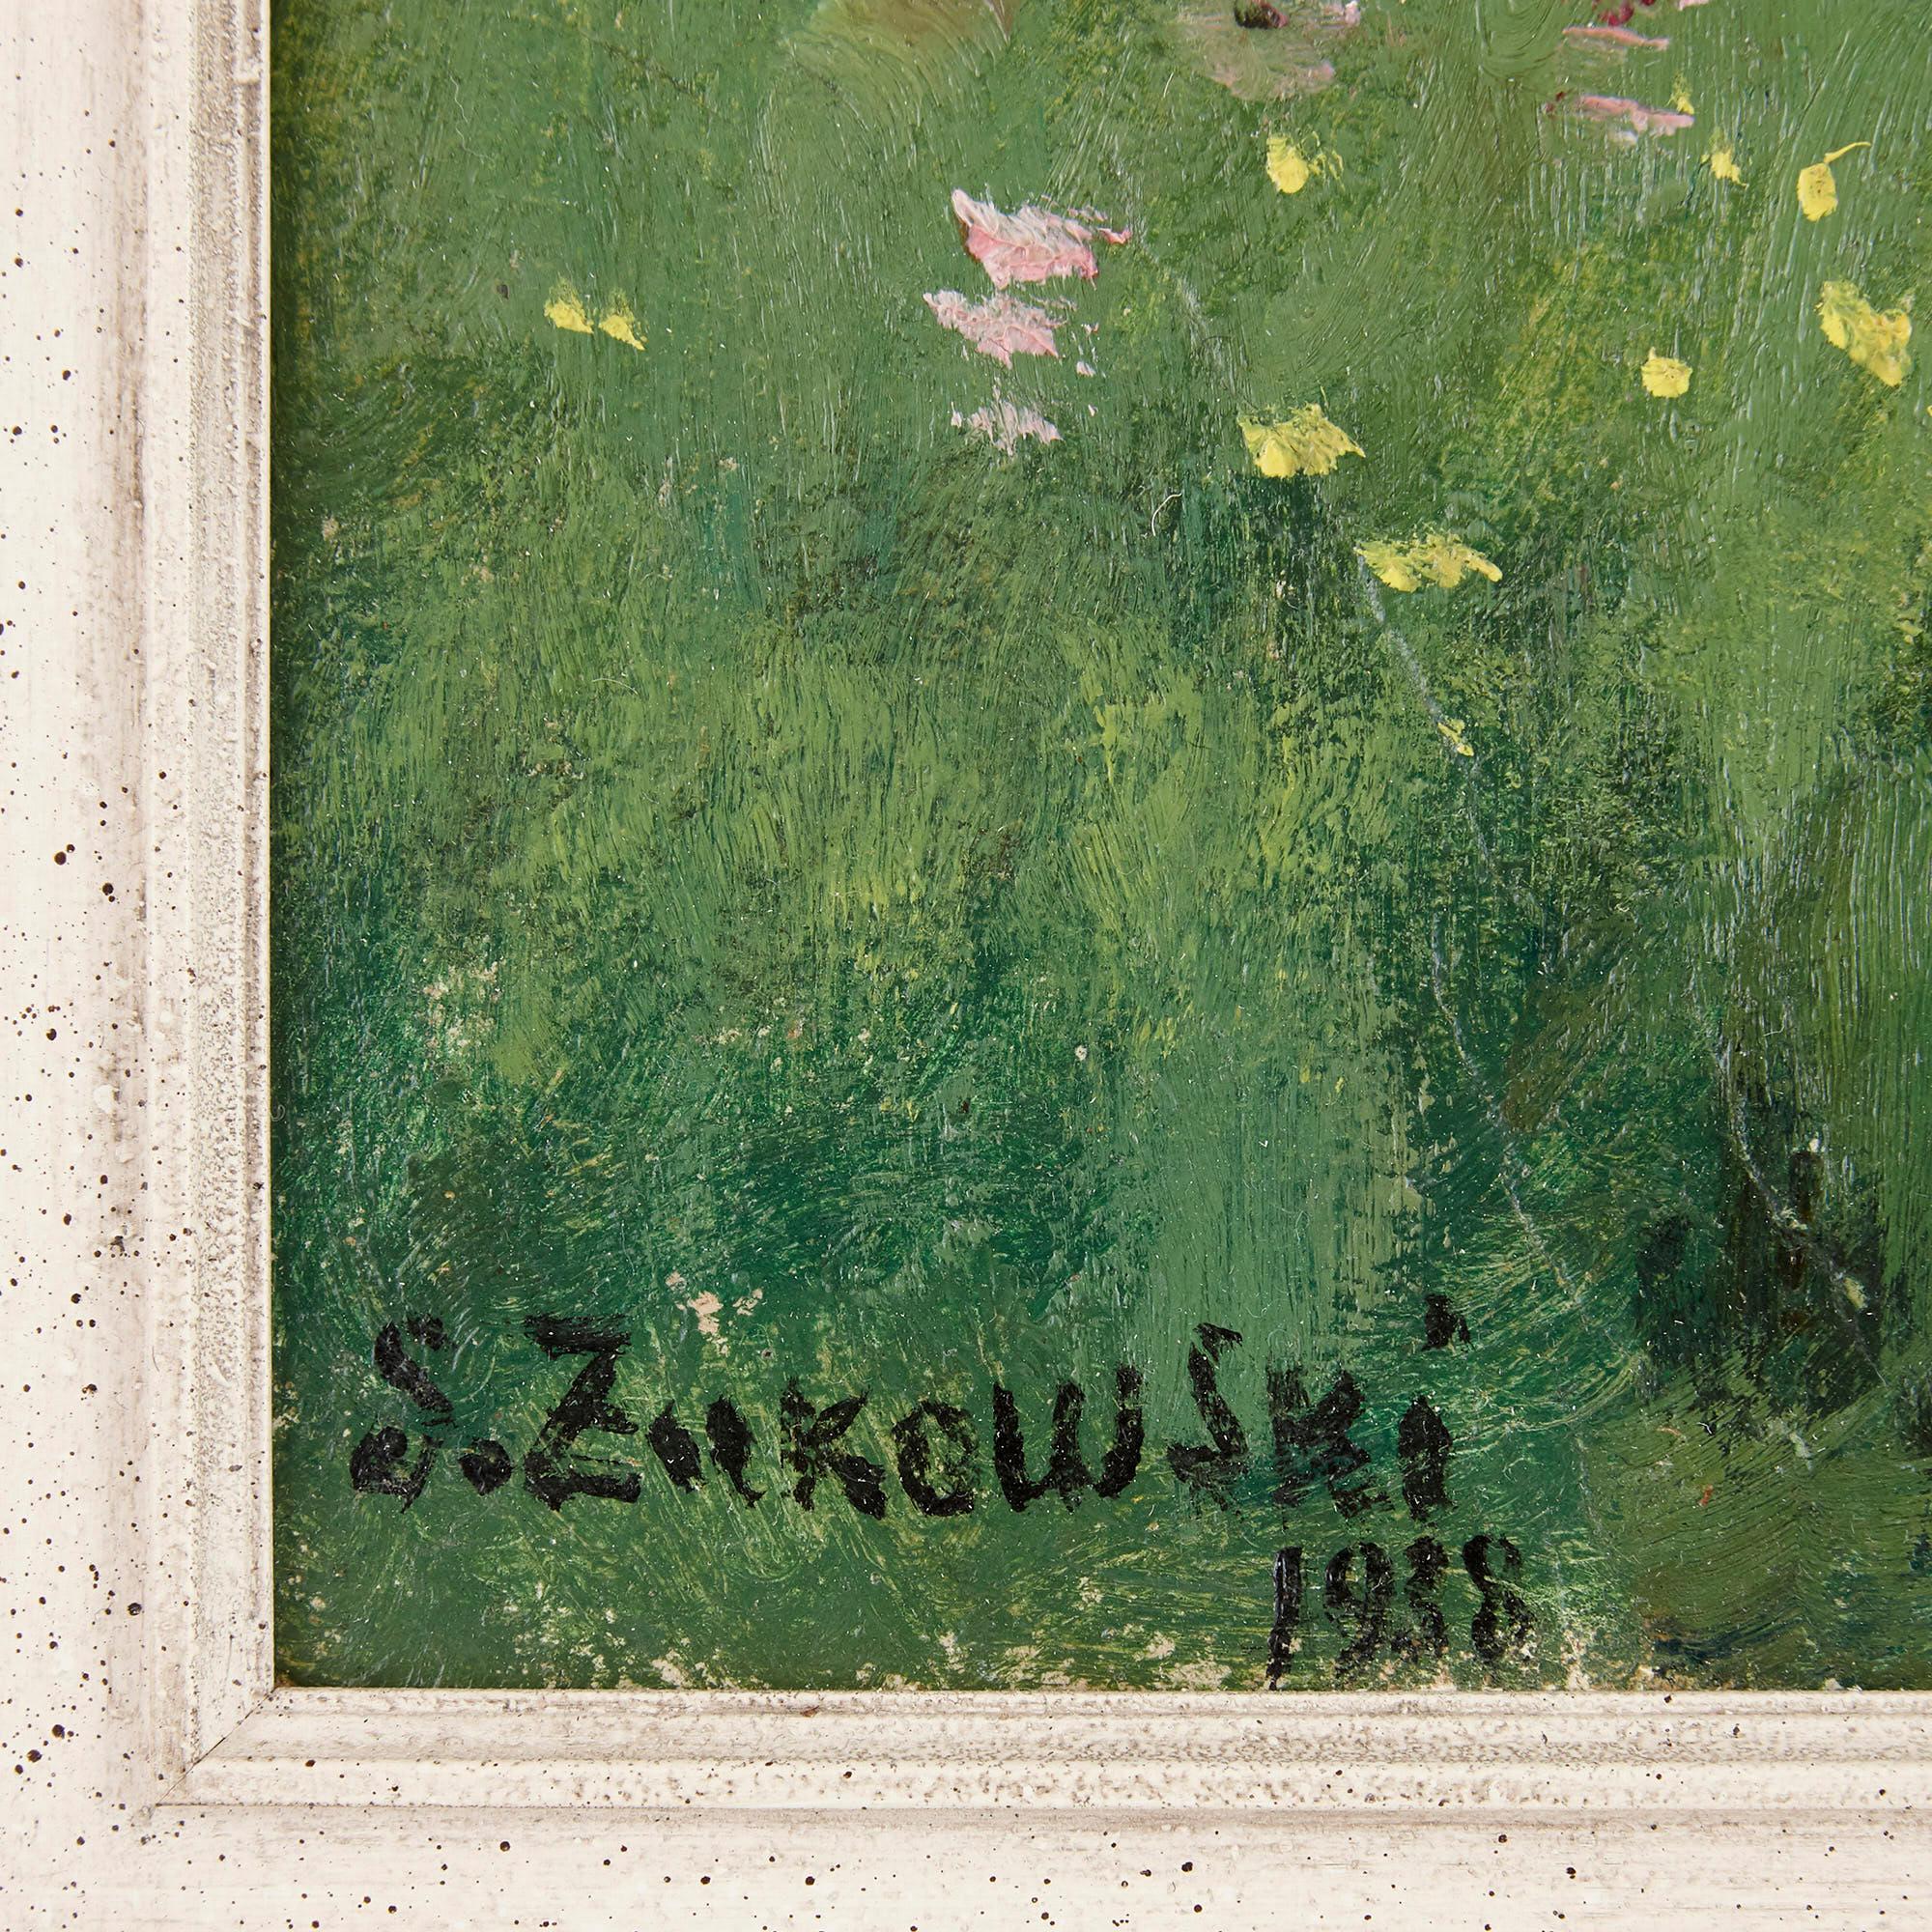 Russisches impressionistisches Gemälde einer Wiese von Zhukovsky
Russisch, 1938
Rahmen: Höhe 68cm, Breite 67,5cm, Tiefe 4cm
Leinwand: Höhe 48cm, Breite 48cm, Tiefe 0,5cm

Dieses schöne Ölgemälde des polnisch-russischen Künstlers Stanislav